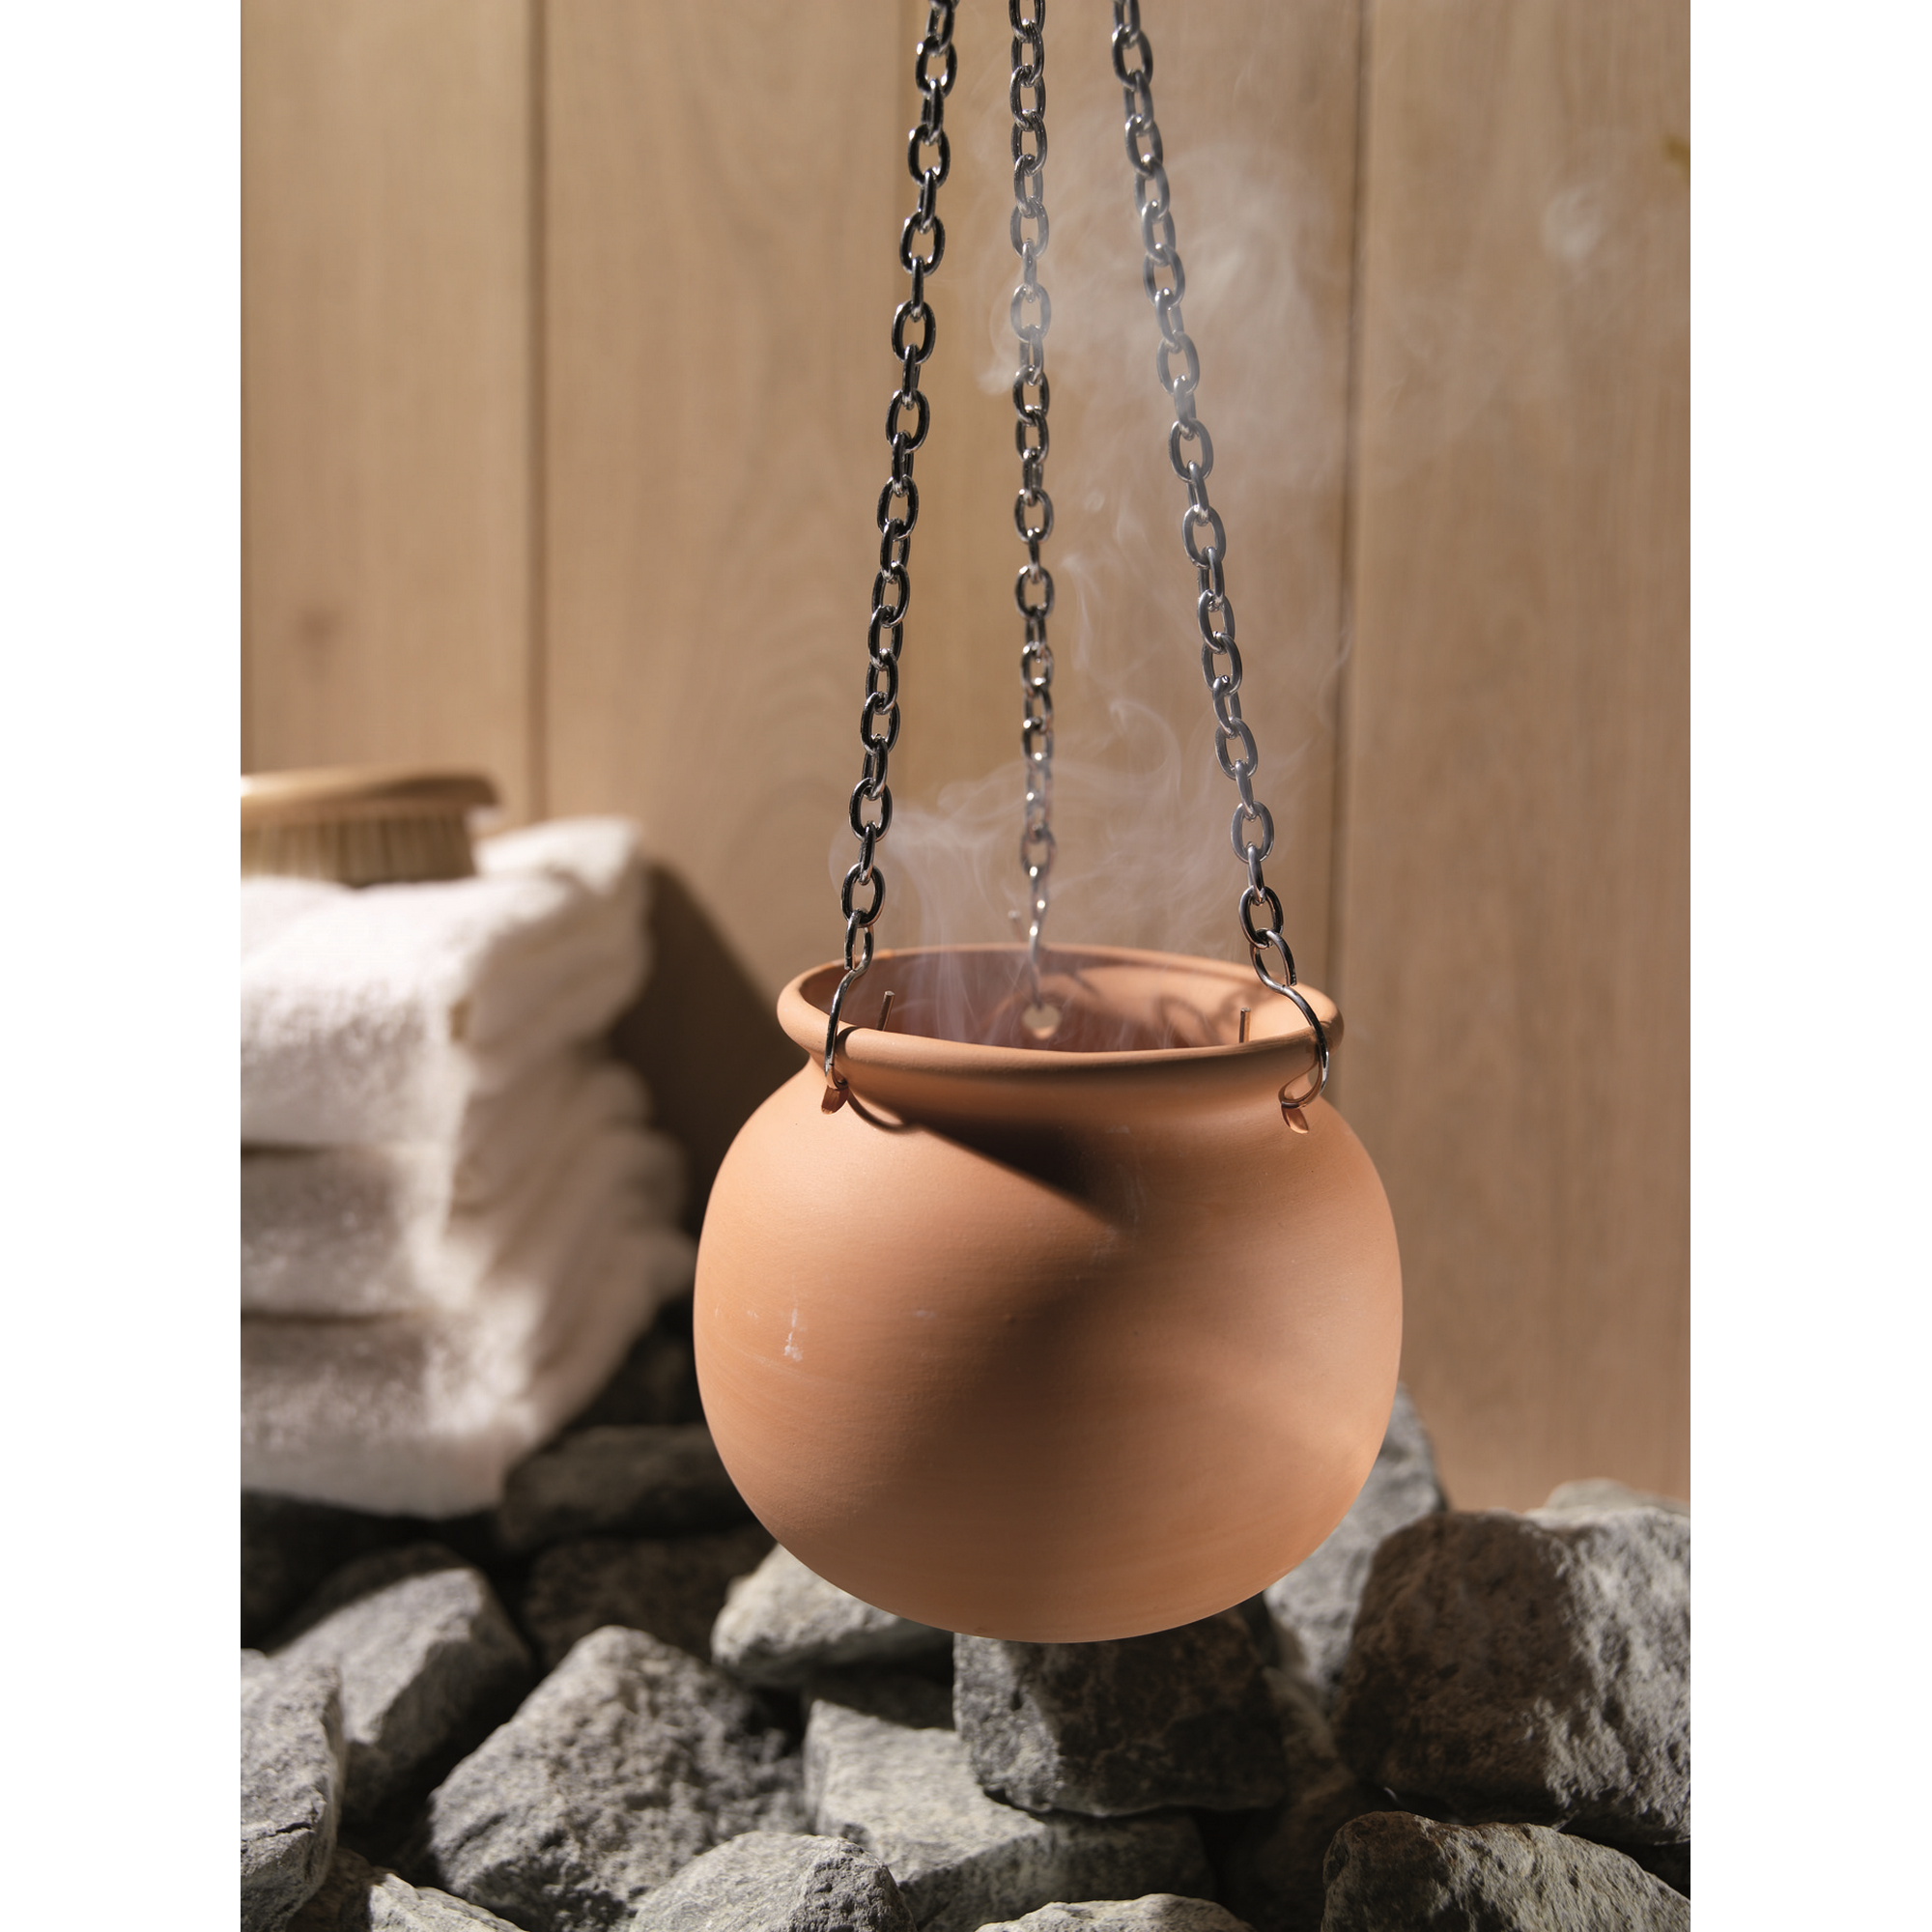 Sauna-Aromatopf Terrakotta + product picture